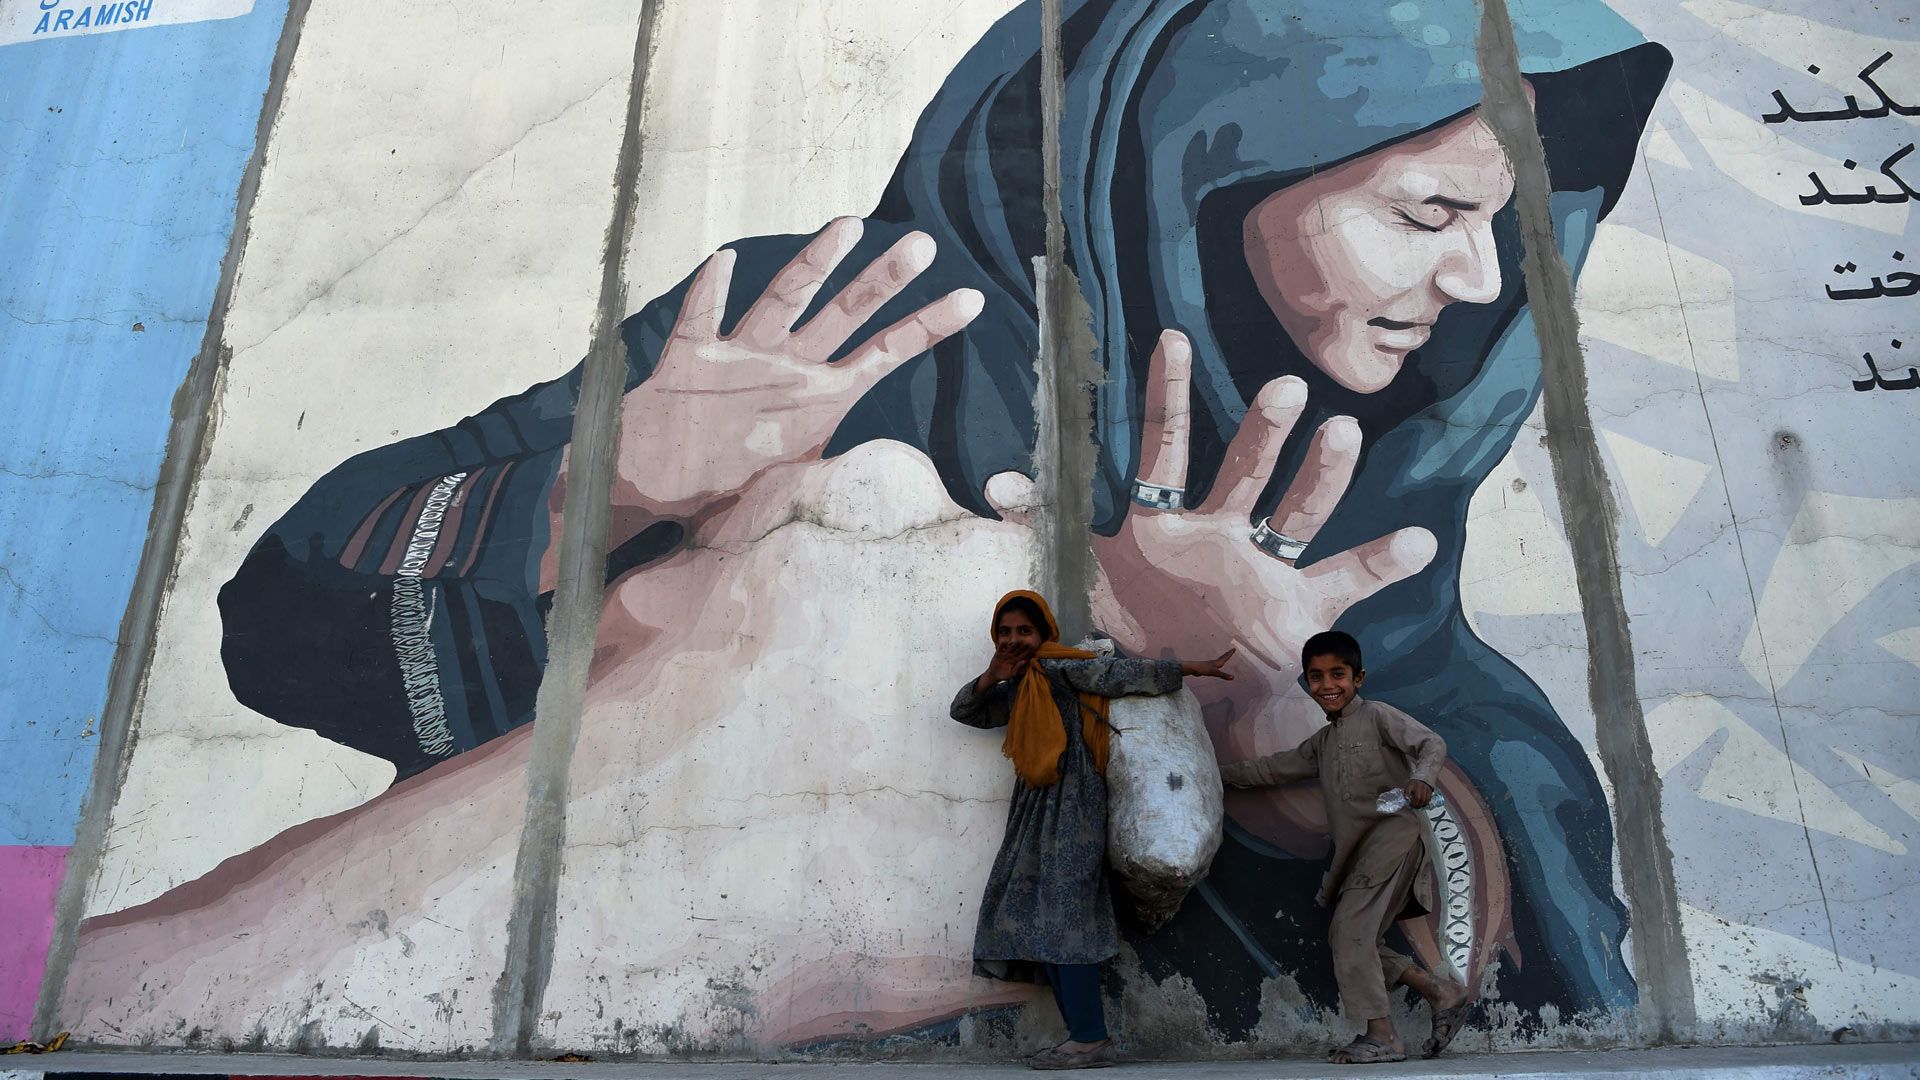 Ly hôn là điều tưởng như không thể đối với phụ nữ Afghanistan hiện nay - Ảnh: Wakil Kohsar/AFP/Getty